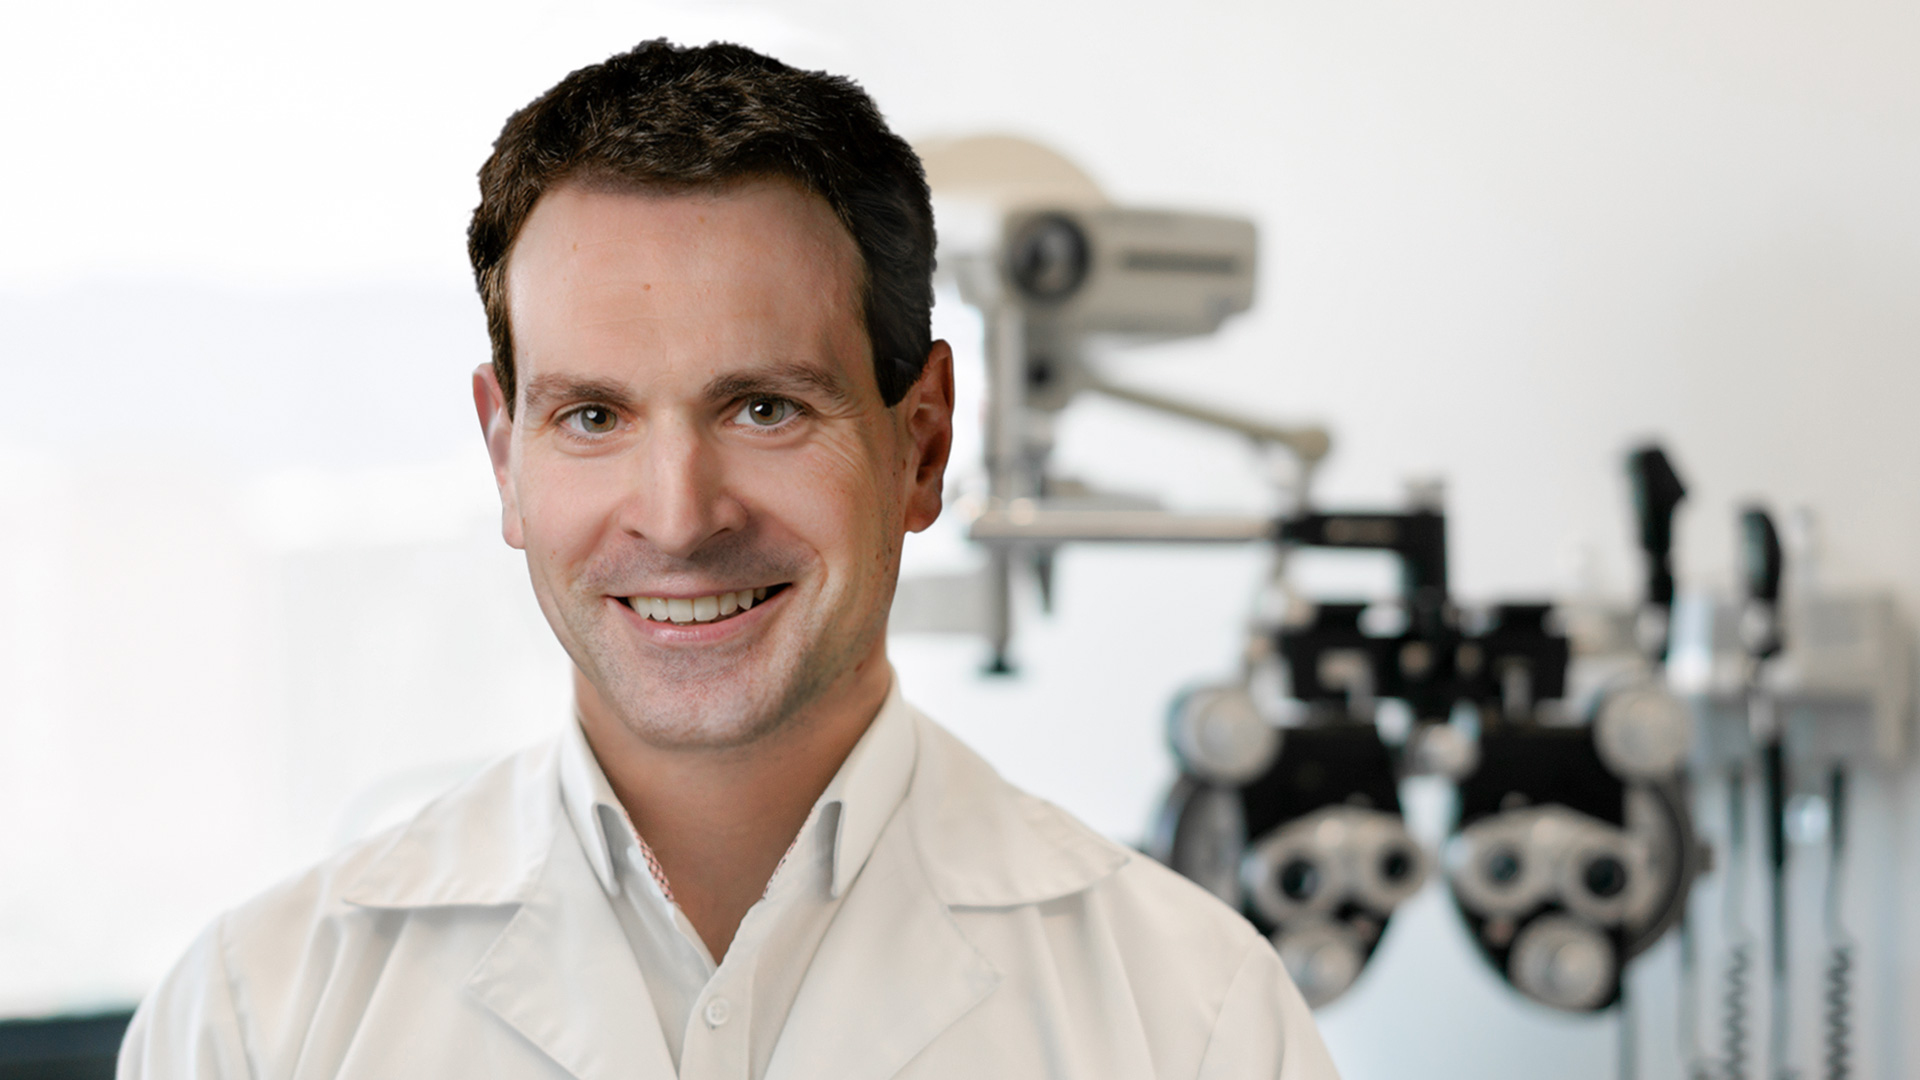 Als Augenarzt in Nürnberg praktiziert Dr. Stefan El-Gayar in seiner modernen Augenarztpraxis am Hefnersplatz 1 in der Innenstadt